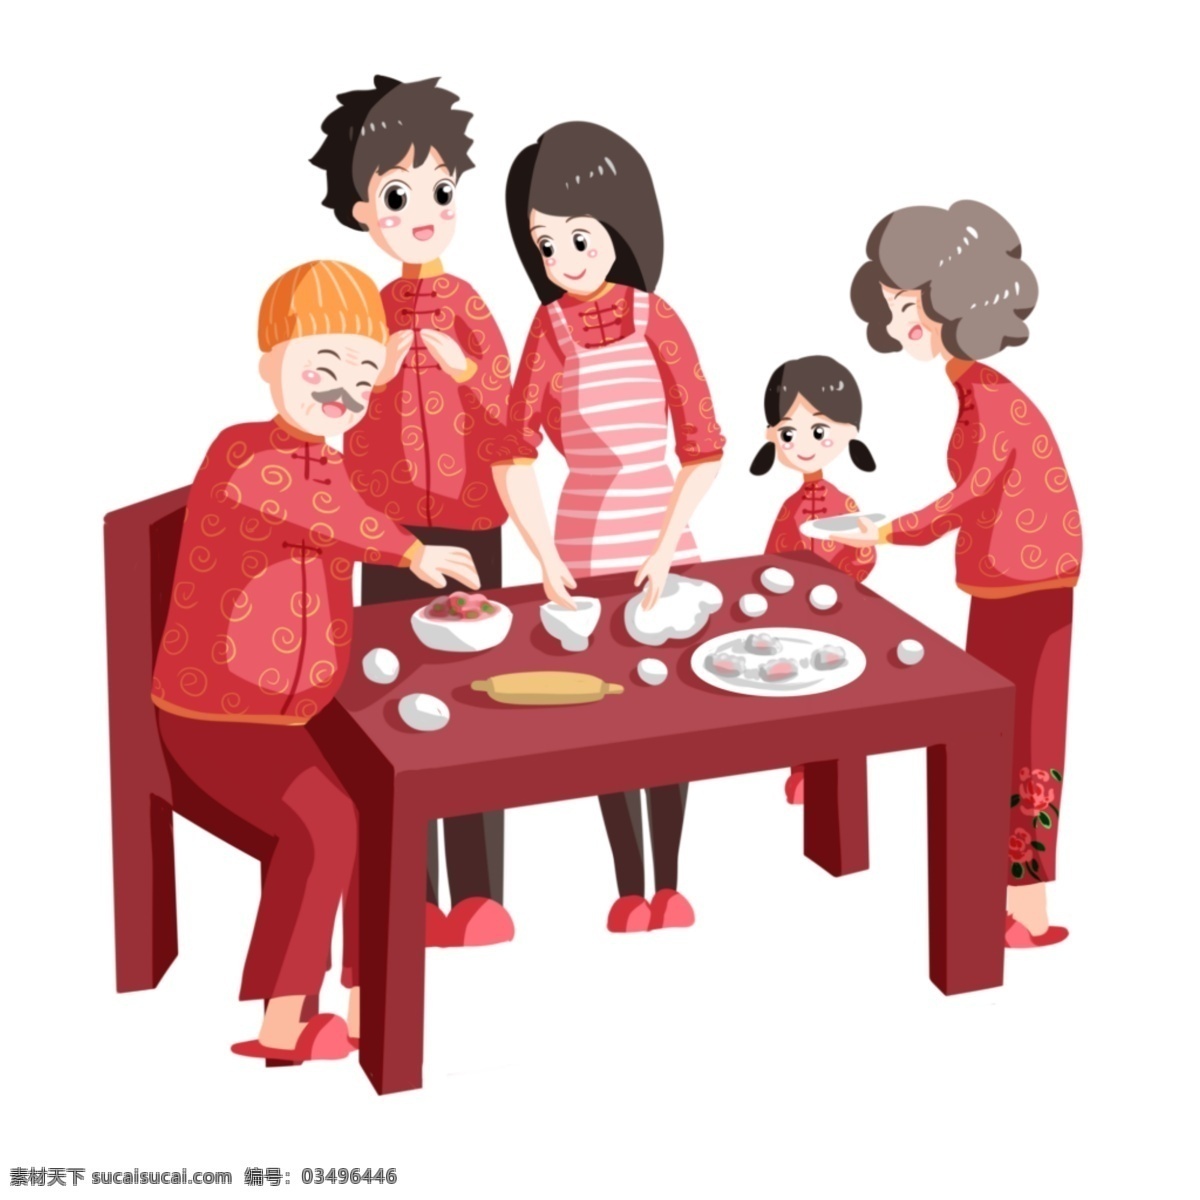 团聚 一家人 美食 幸福的一家人 红色的桌子 美味的食物 卡通人物 团聚人物插画 红色的凳子 黄色的帽子